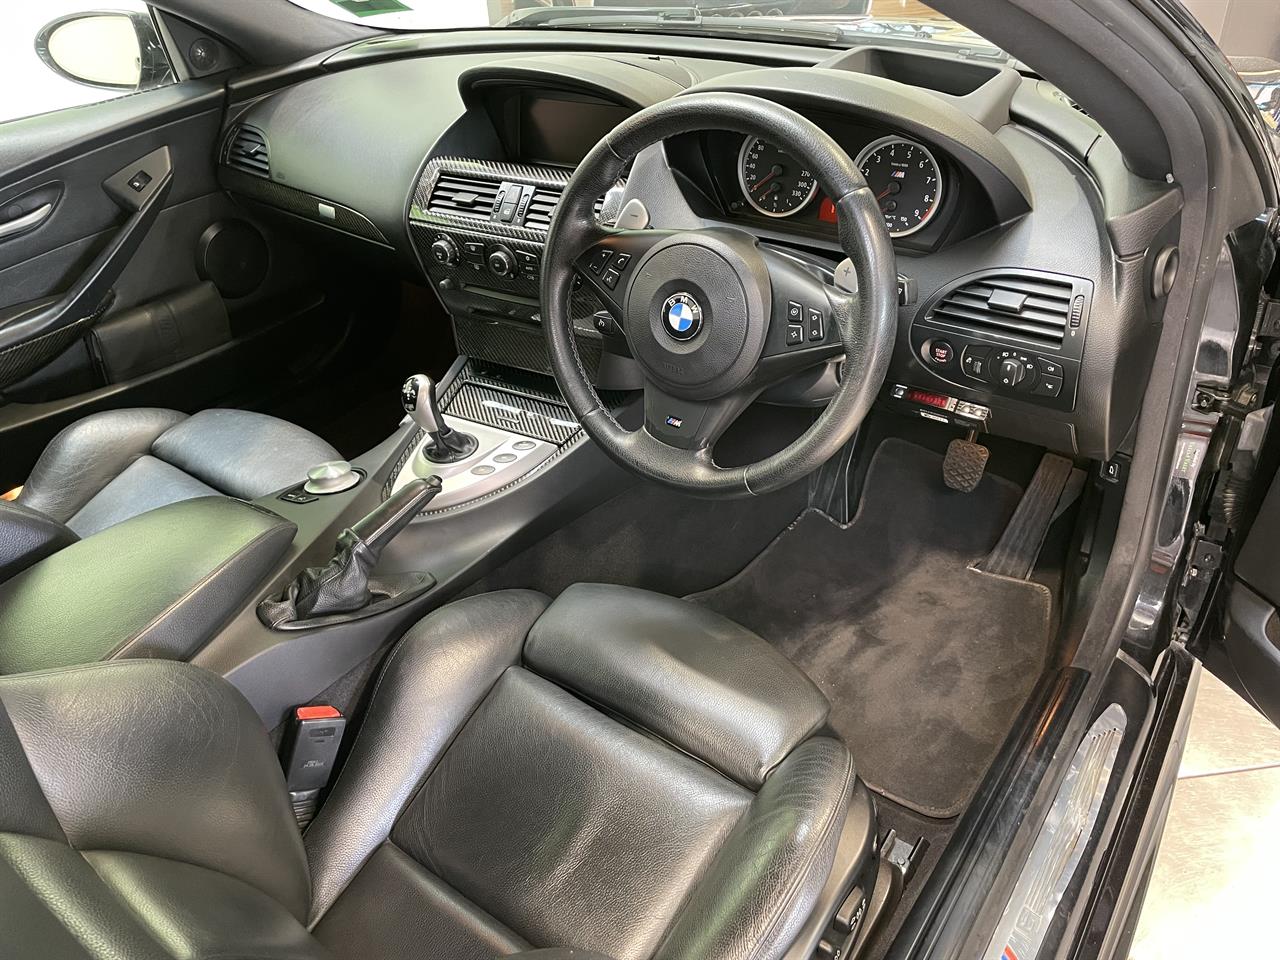 2005 BMW M6